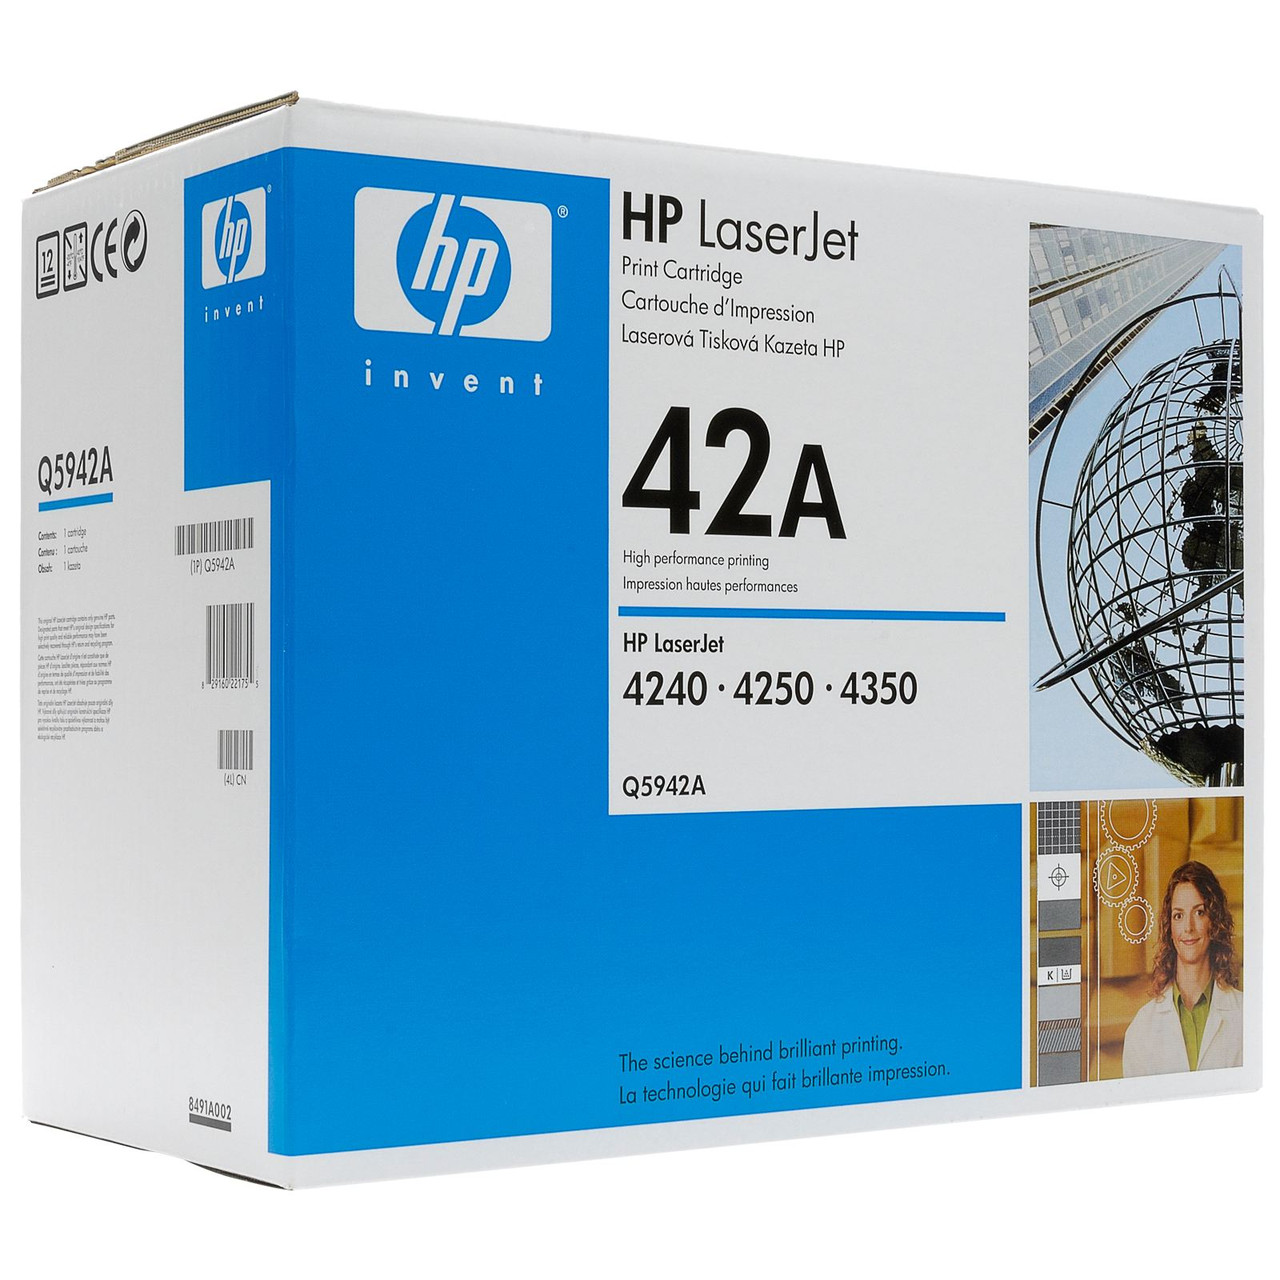 HP Q5942A (42A) картридж для HP LJ 4250/4240/4350 series